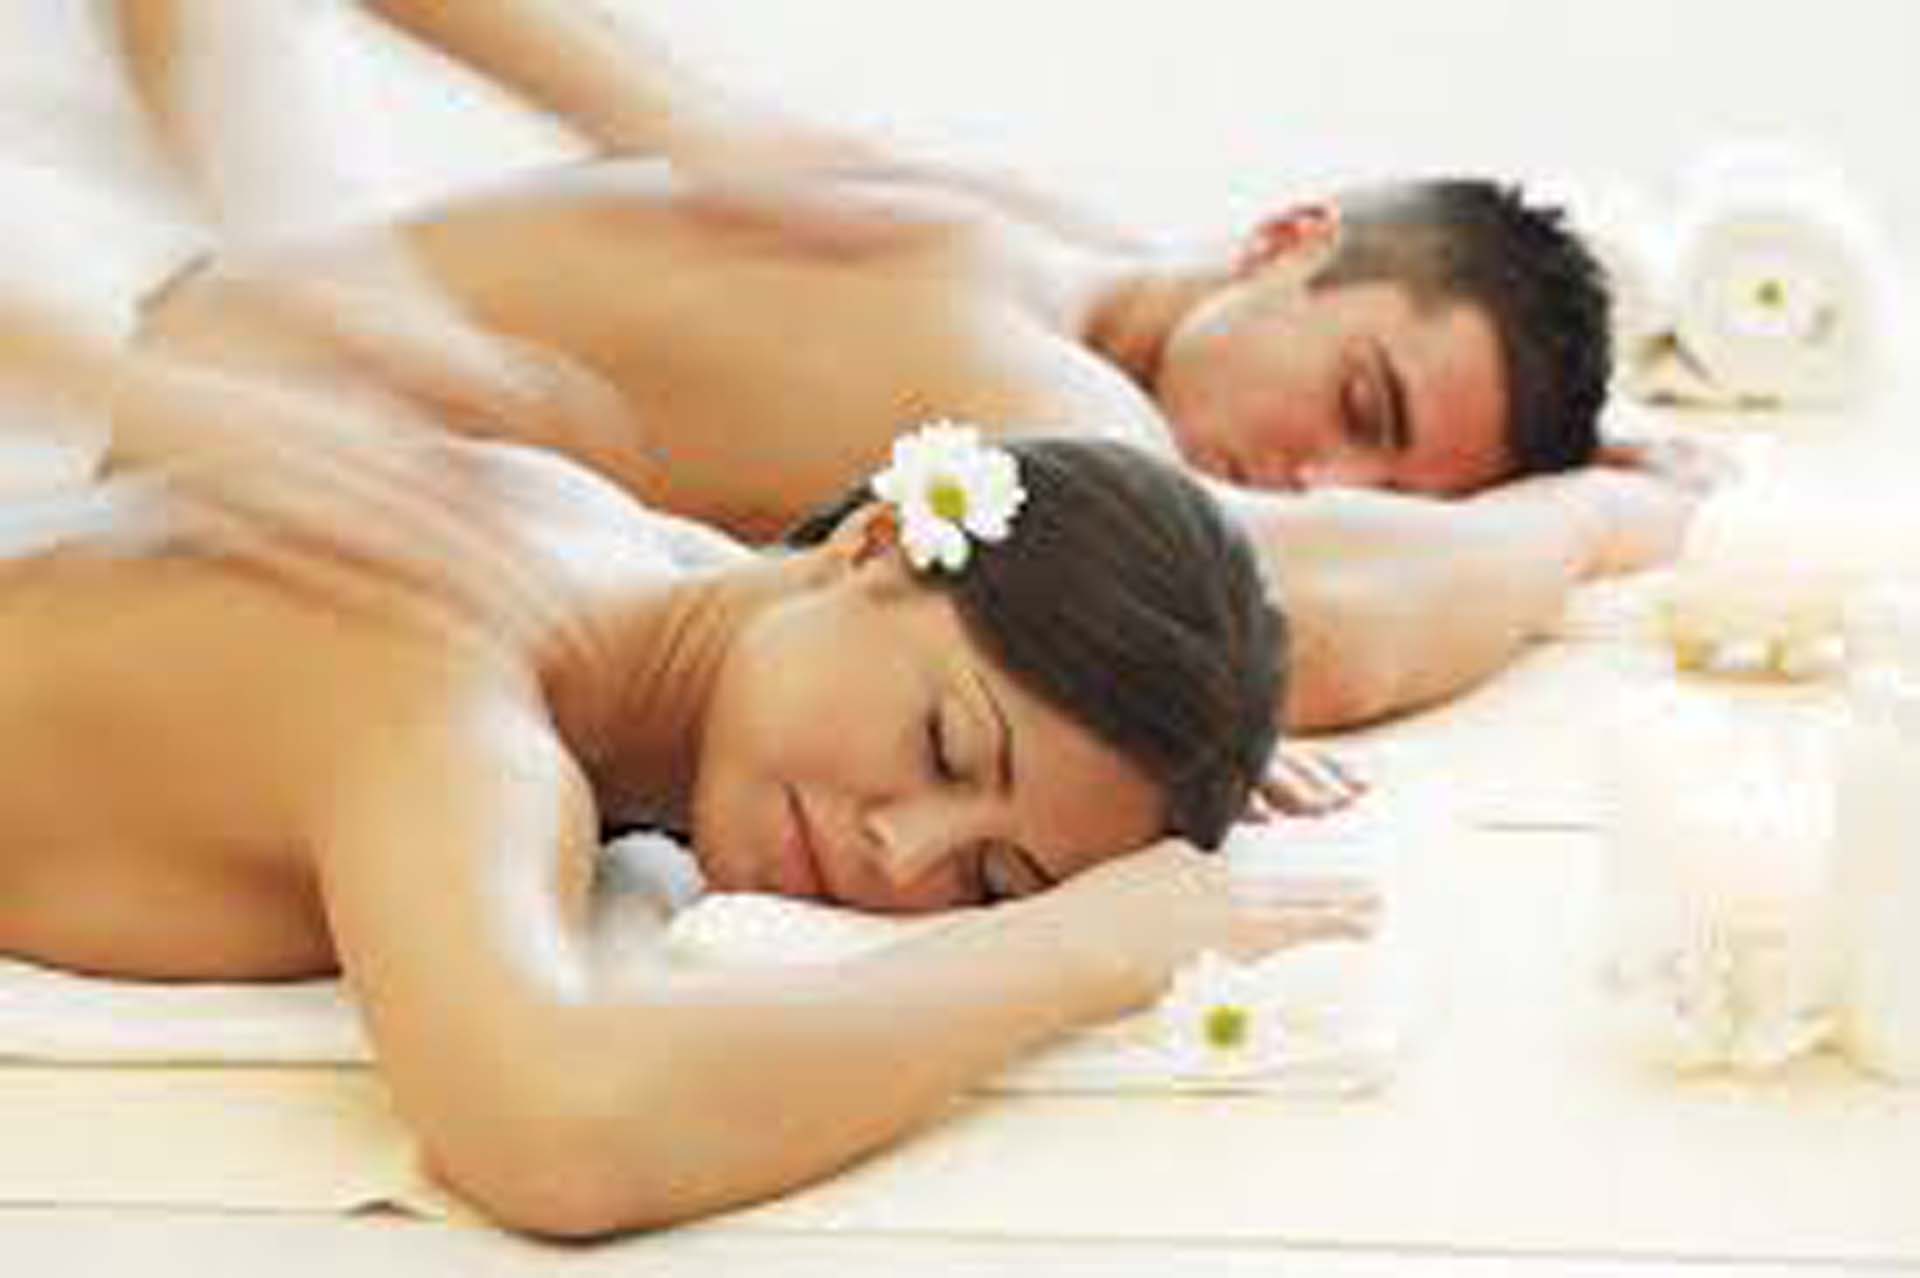 Massage, Spa License In Dubai For Sale Call 0554522319